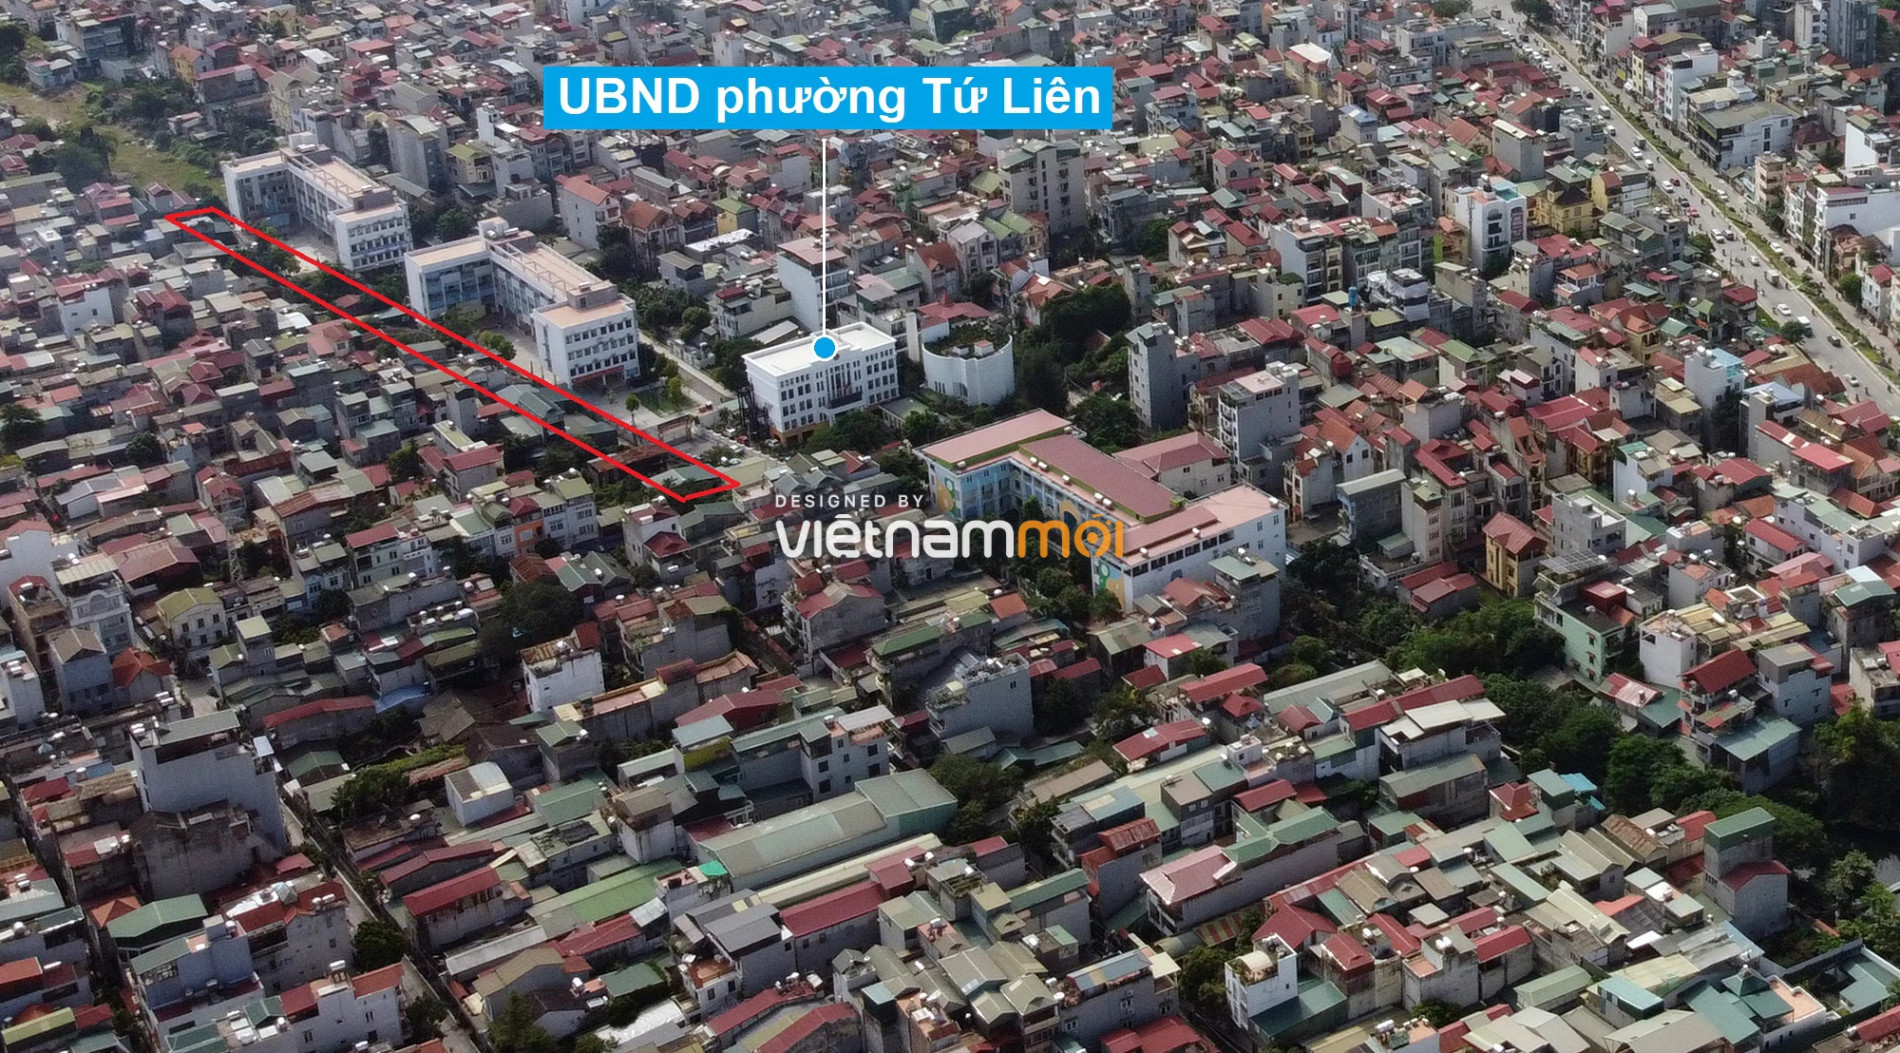 Những khu đất sắp thu hồi để mở đường ở quận Tây Hồ, Hà Nội (phần 5) - Ảnh 11.